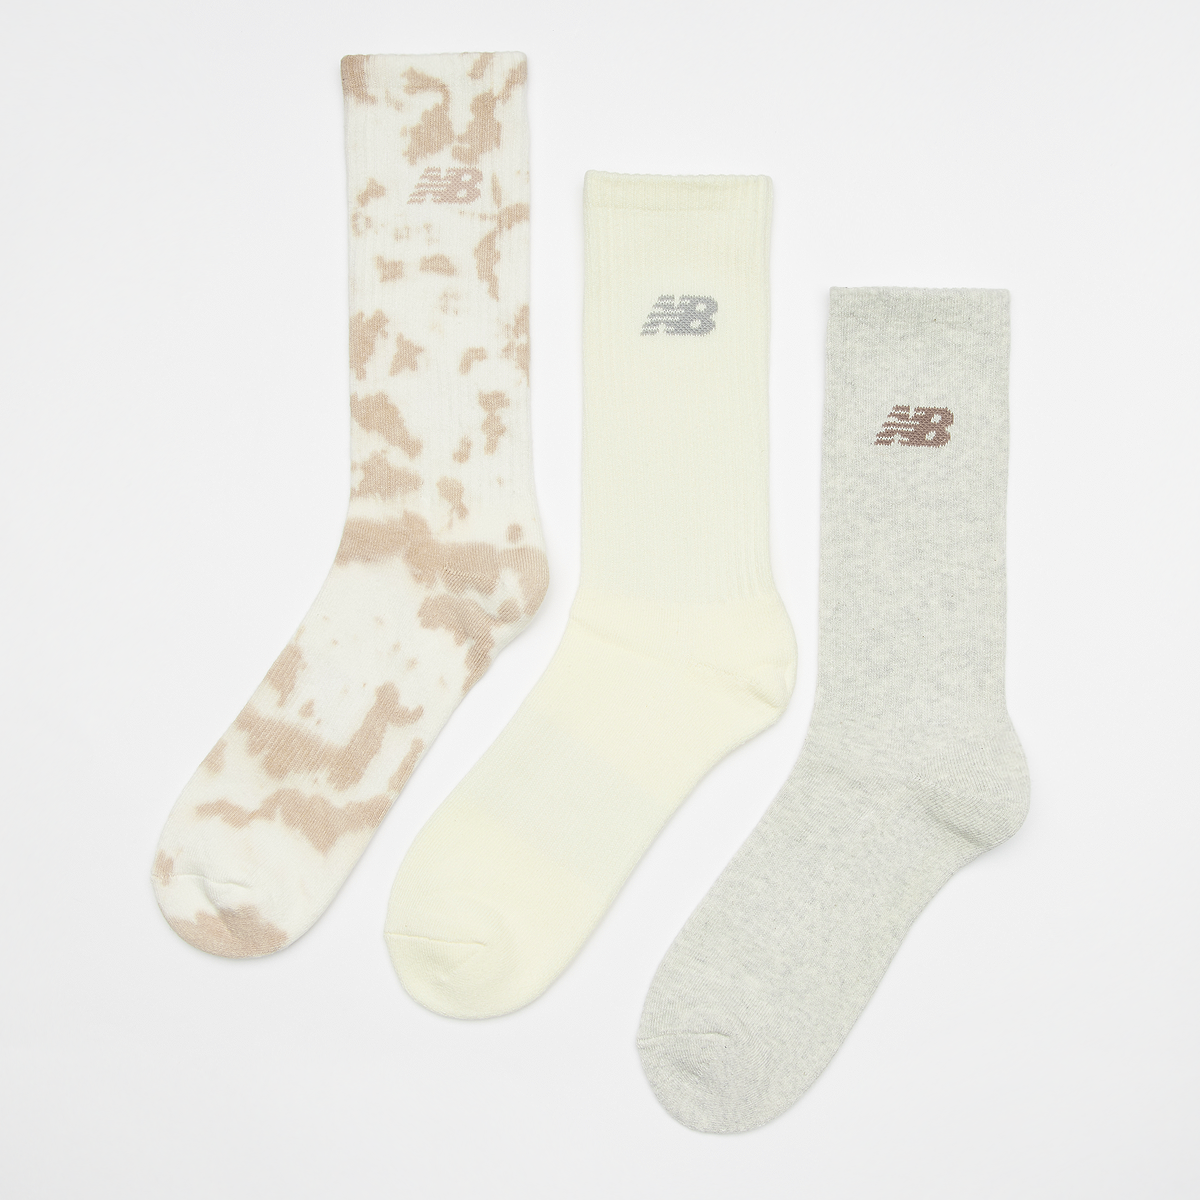 New Balance Fashion Cushioned Crew Socks W tie-dye (3 Pack) Lang Heren white maat: 35-38 beschikbare maaten:35-38 39-42 43-46